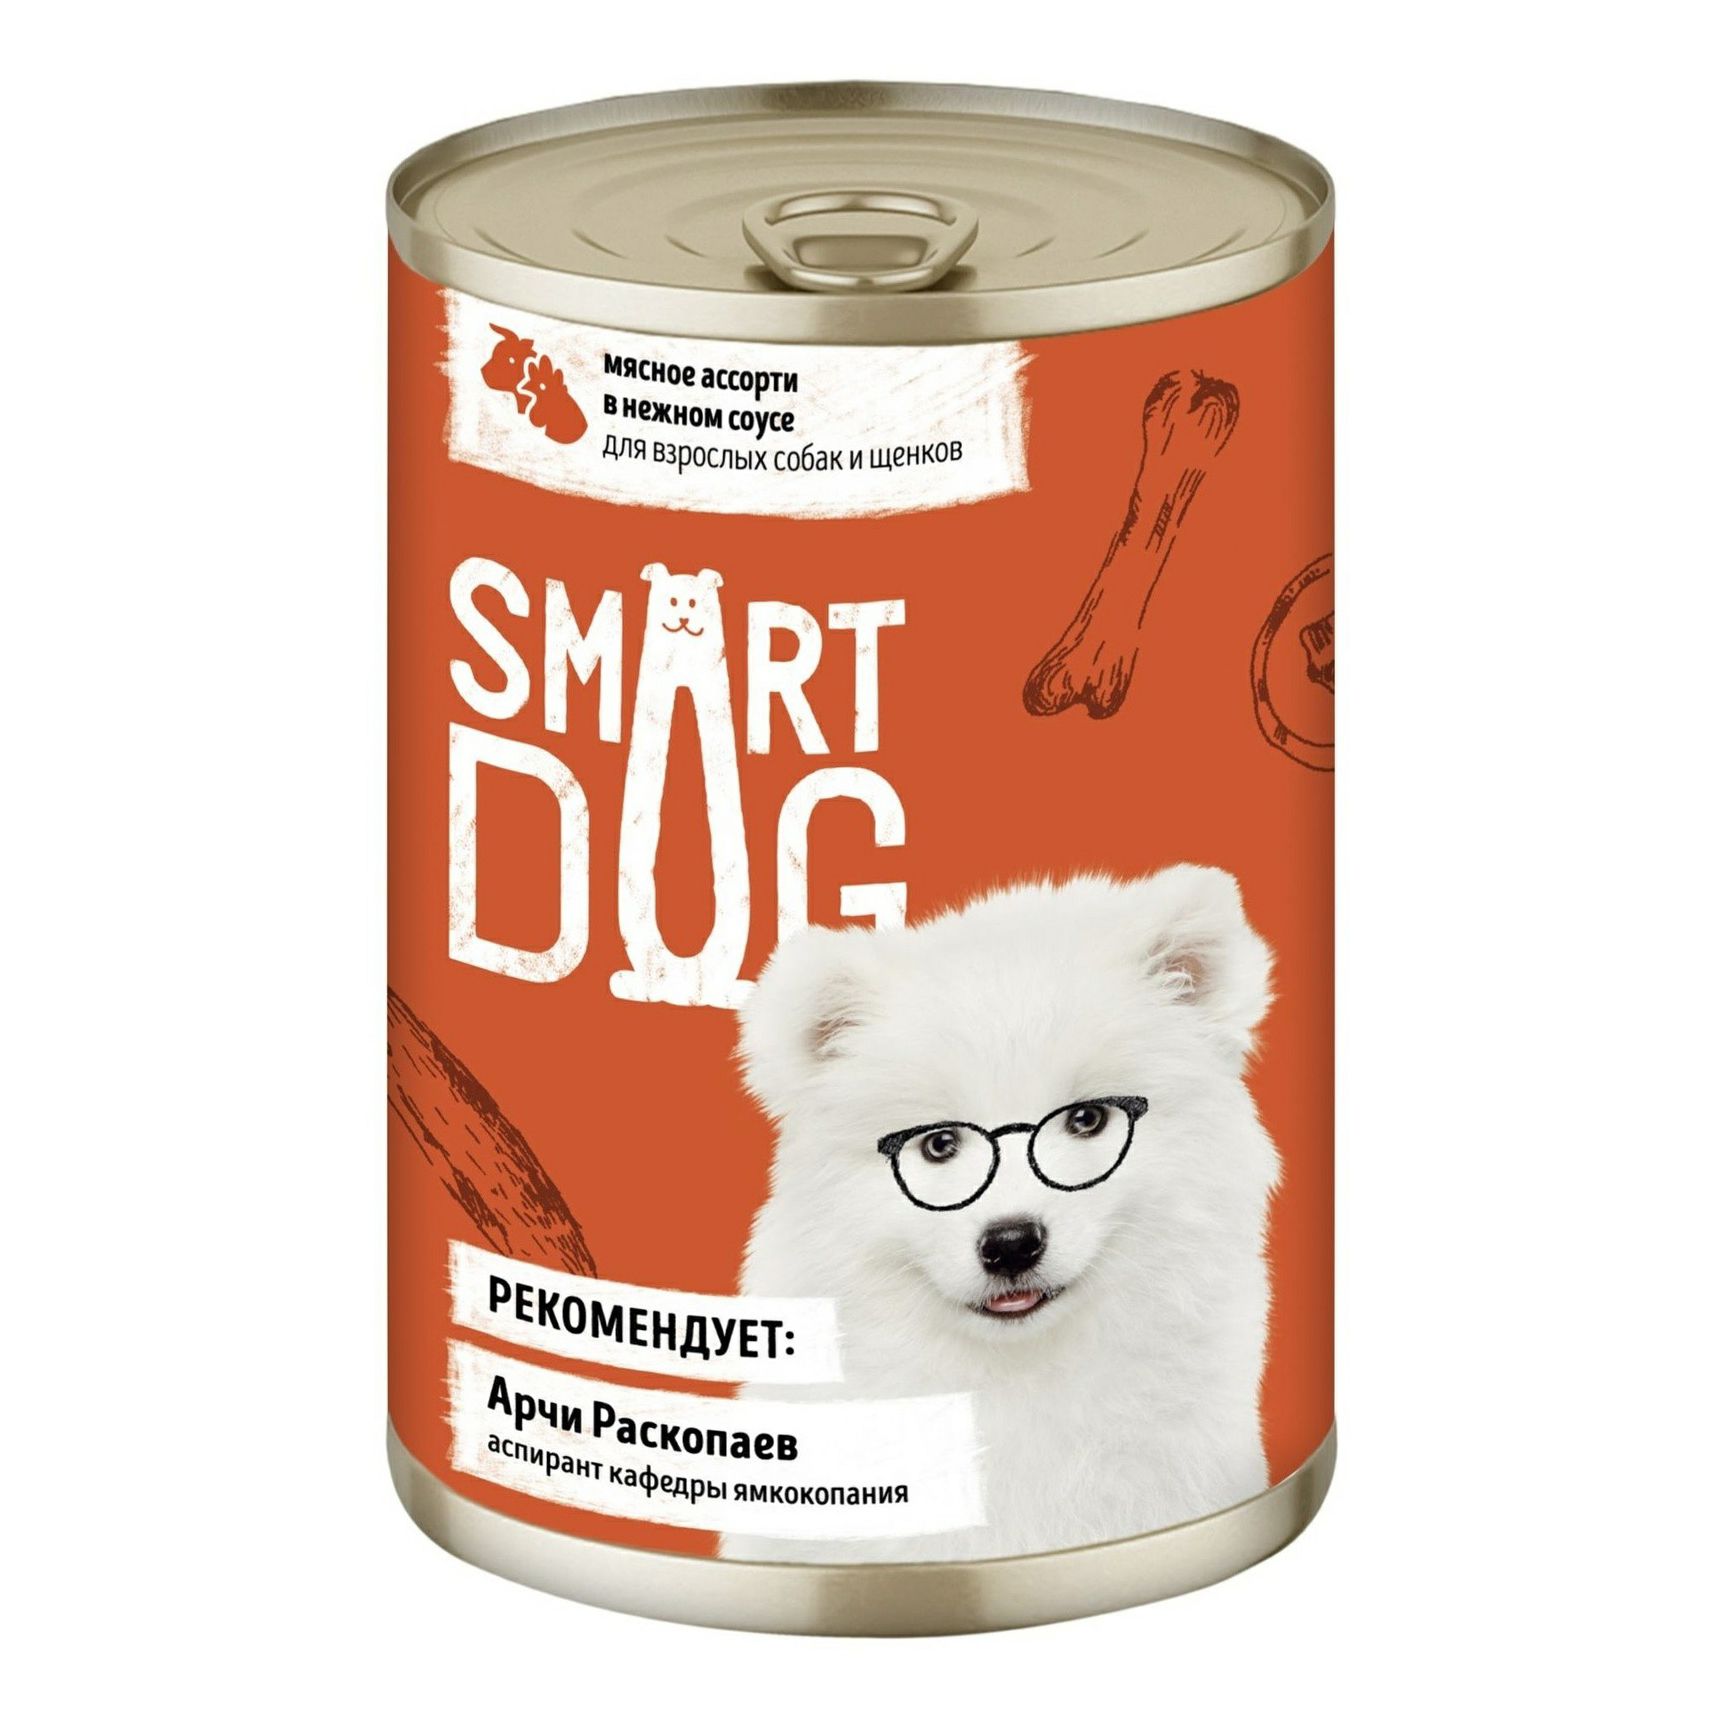 Влажный корм Smart Dog мясное ассорти в нежном соусе для взрослых собак и щенков 240 г